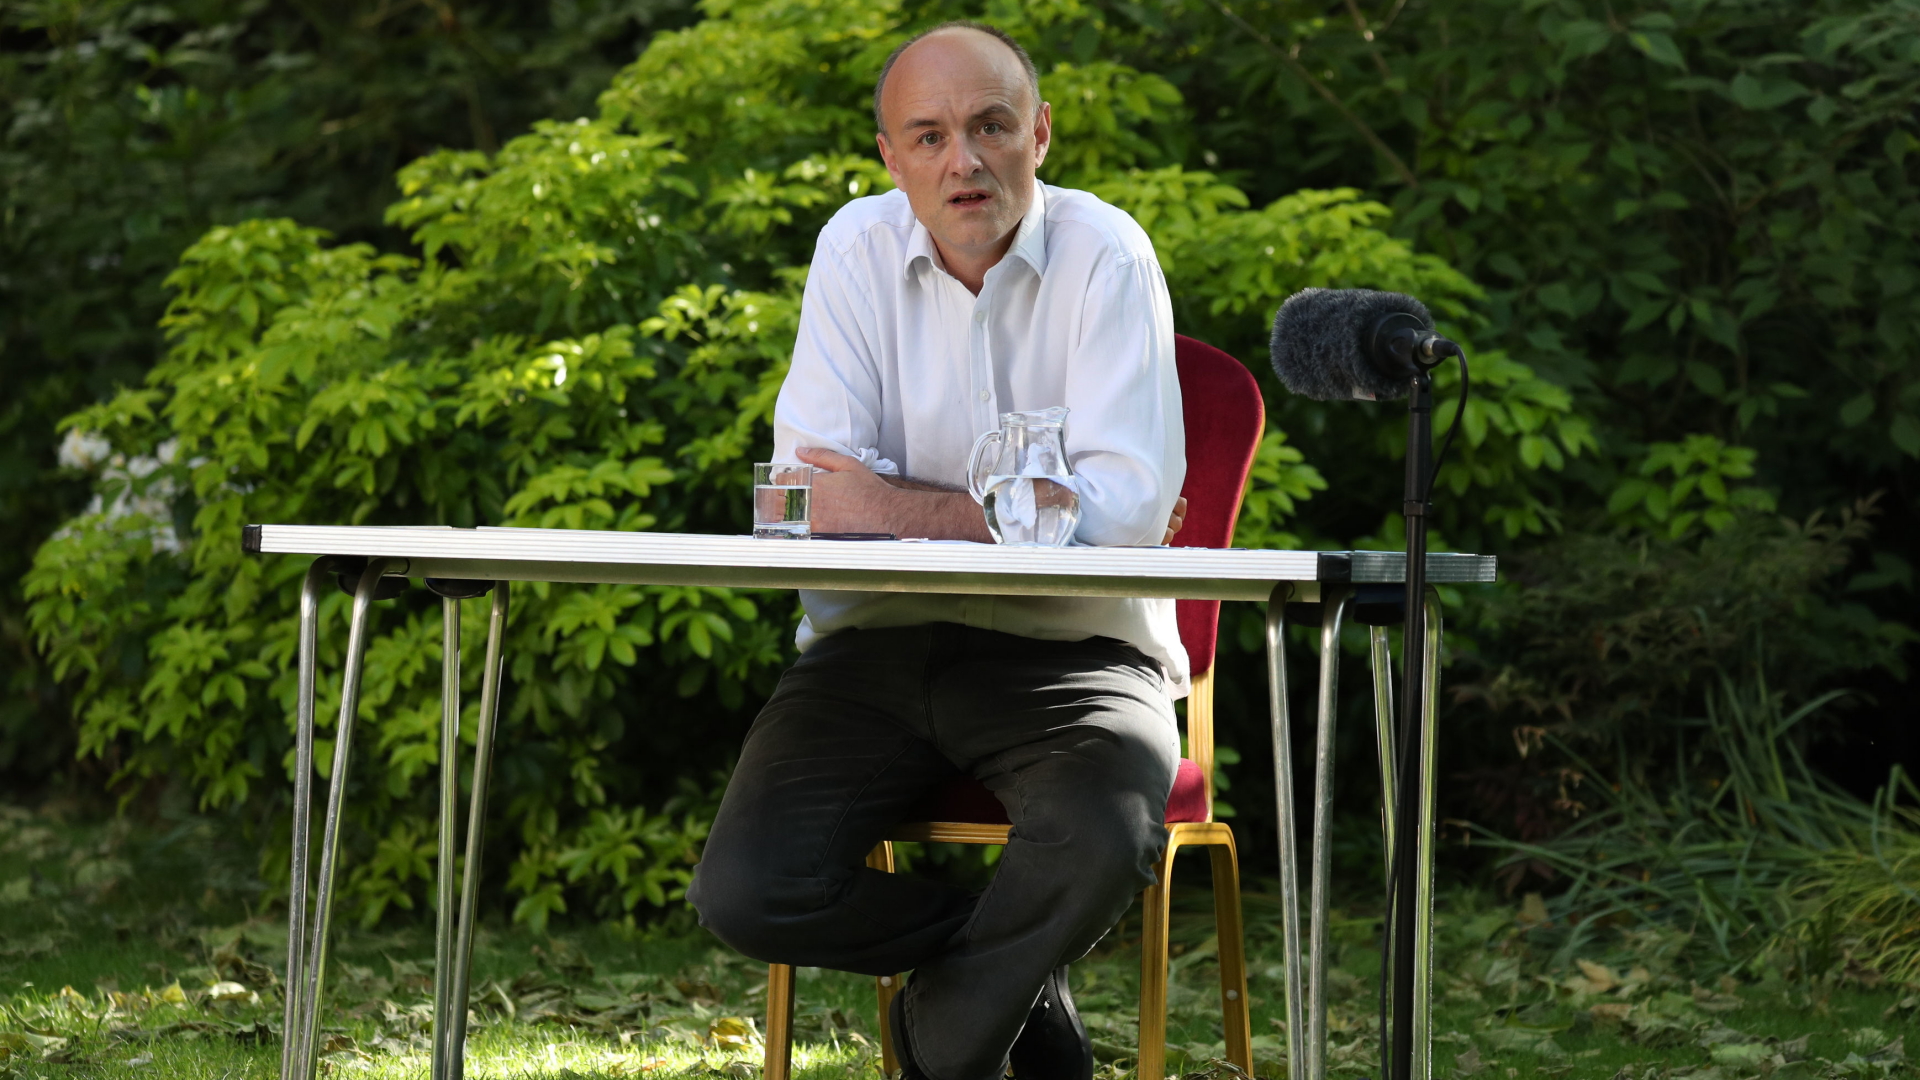 Regierungsberater Dominic Cummings gibt im Garten von 10 Downing Street eine Erklärung ab.